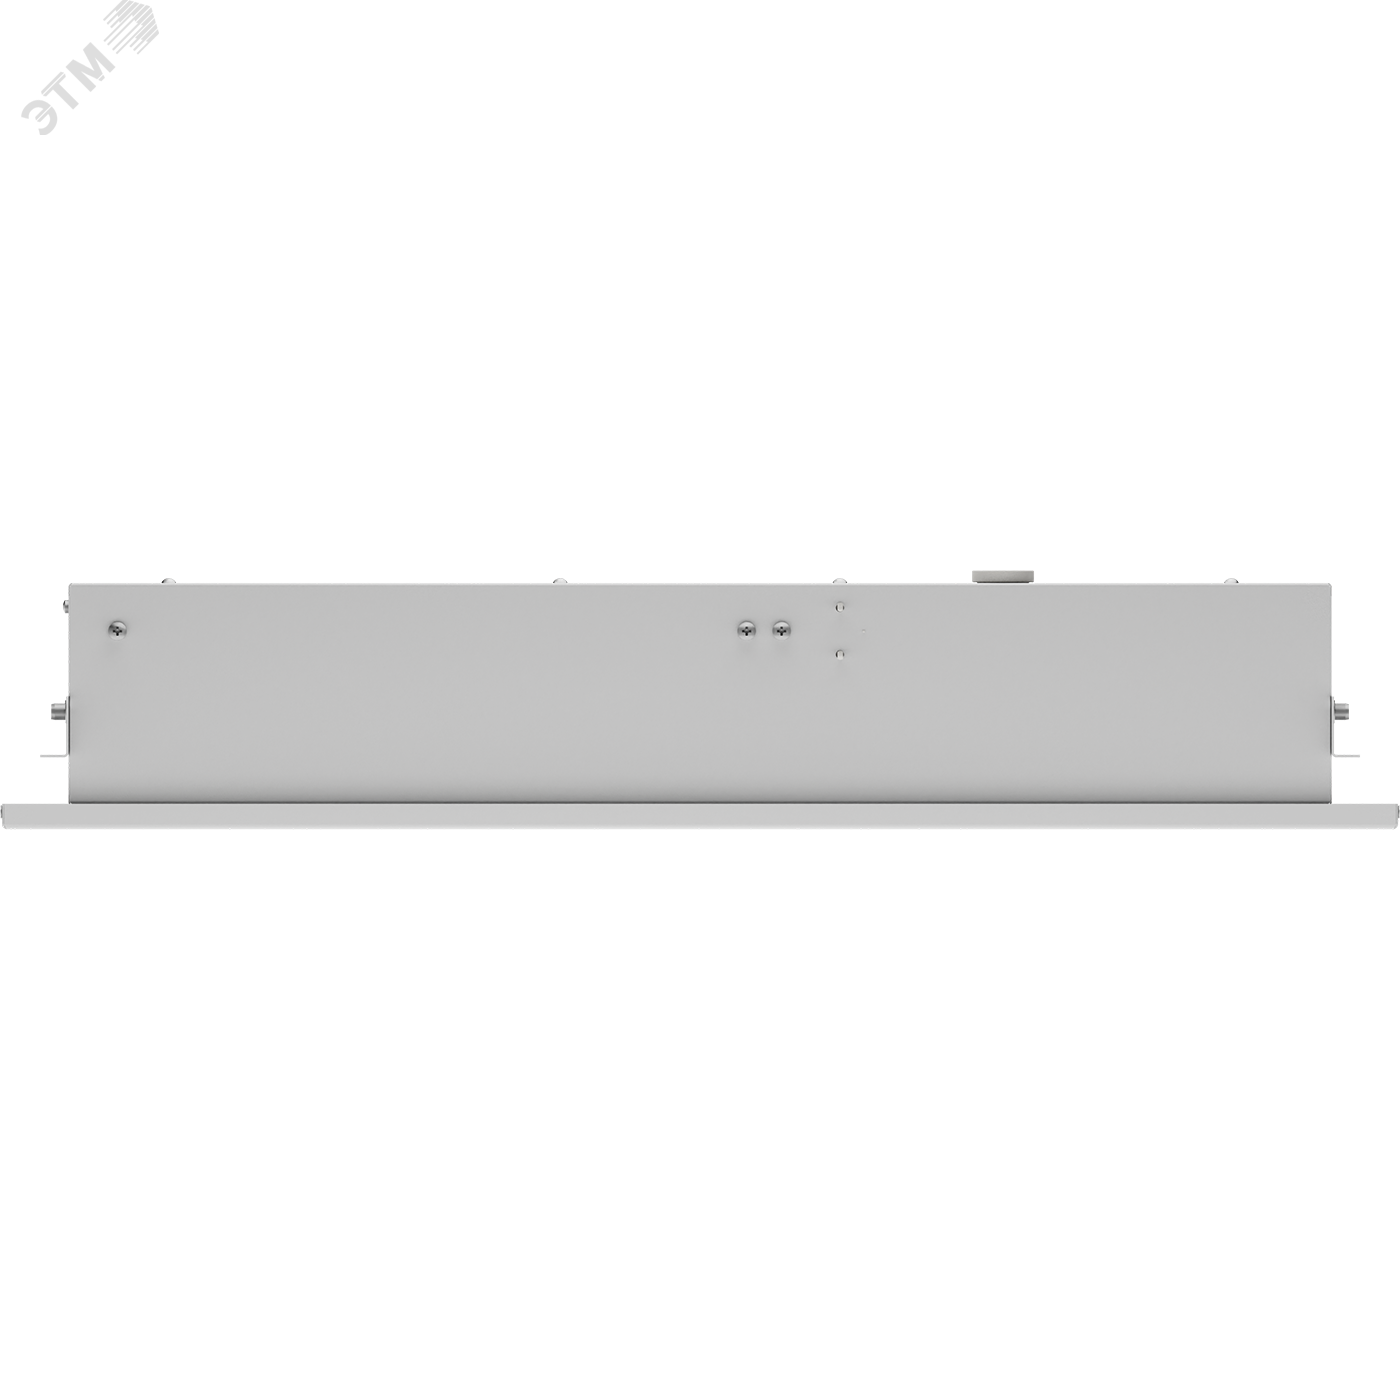 Светильник OWP/R 4x18 HF темперированное стекло IP54 встраиваемый опаловый ЭПРА 1373000180 Световые Технологии - превью 7